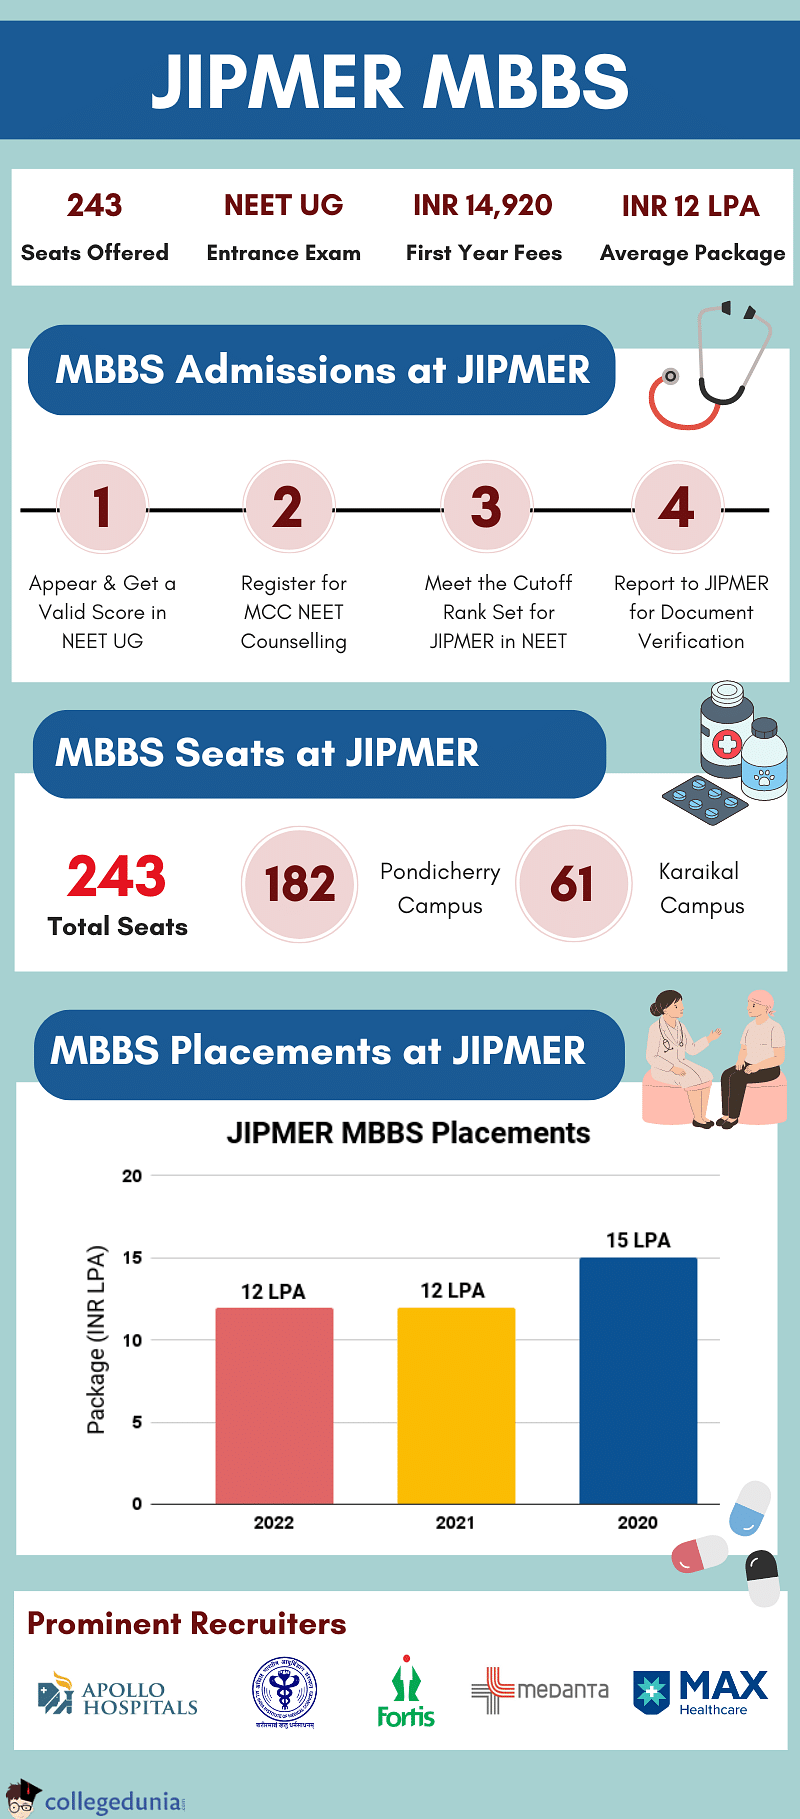 MBBS at JIPMER